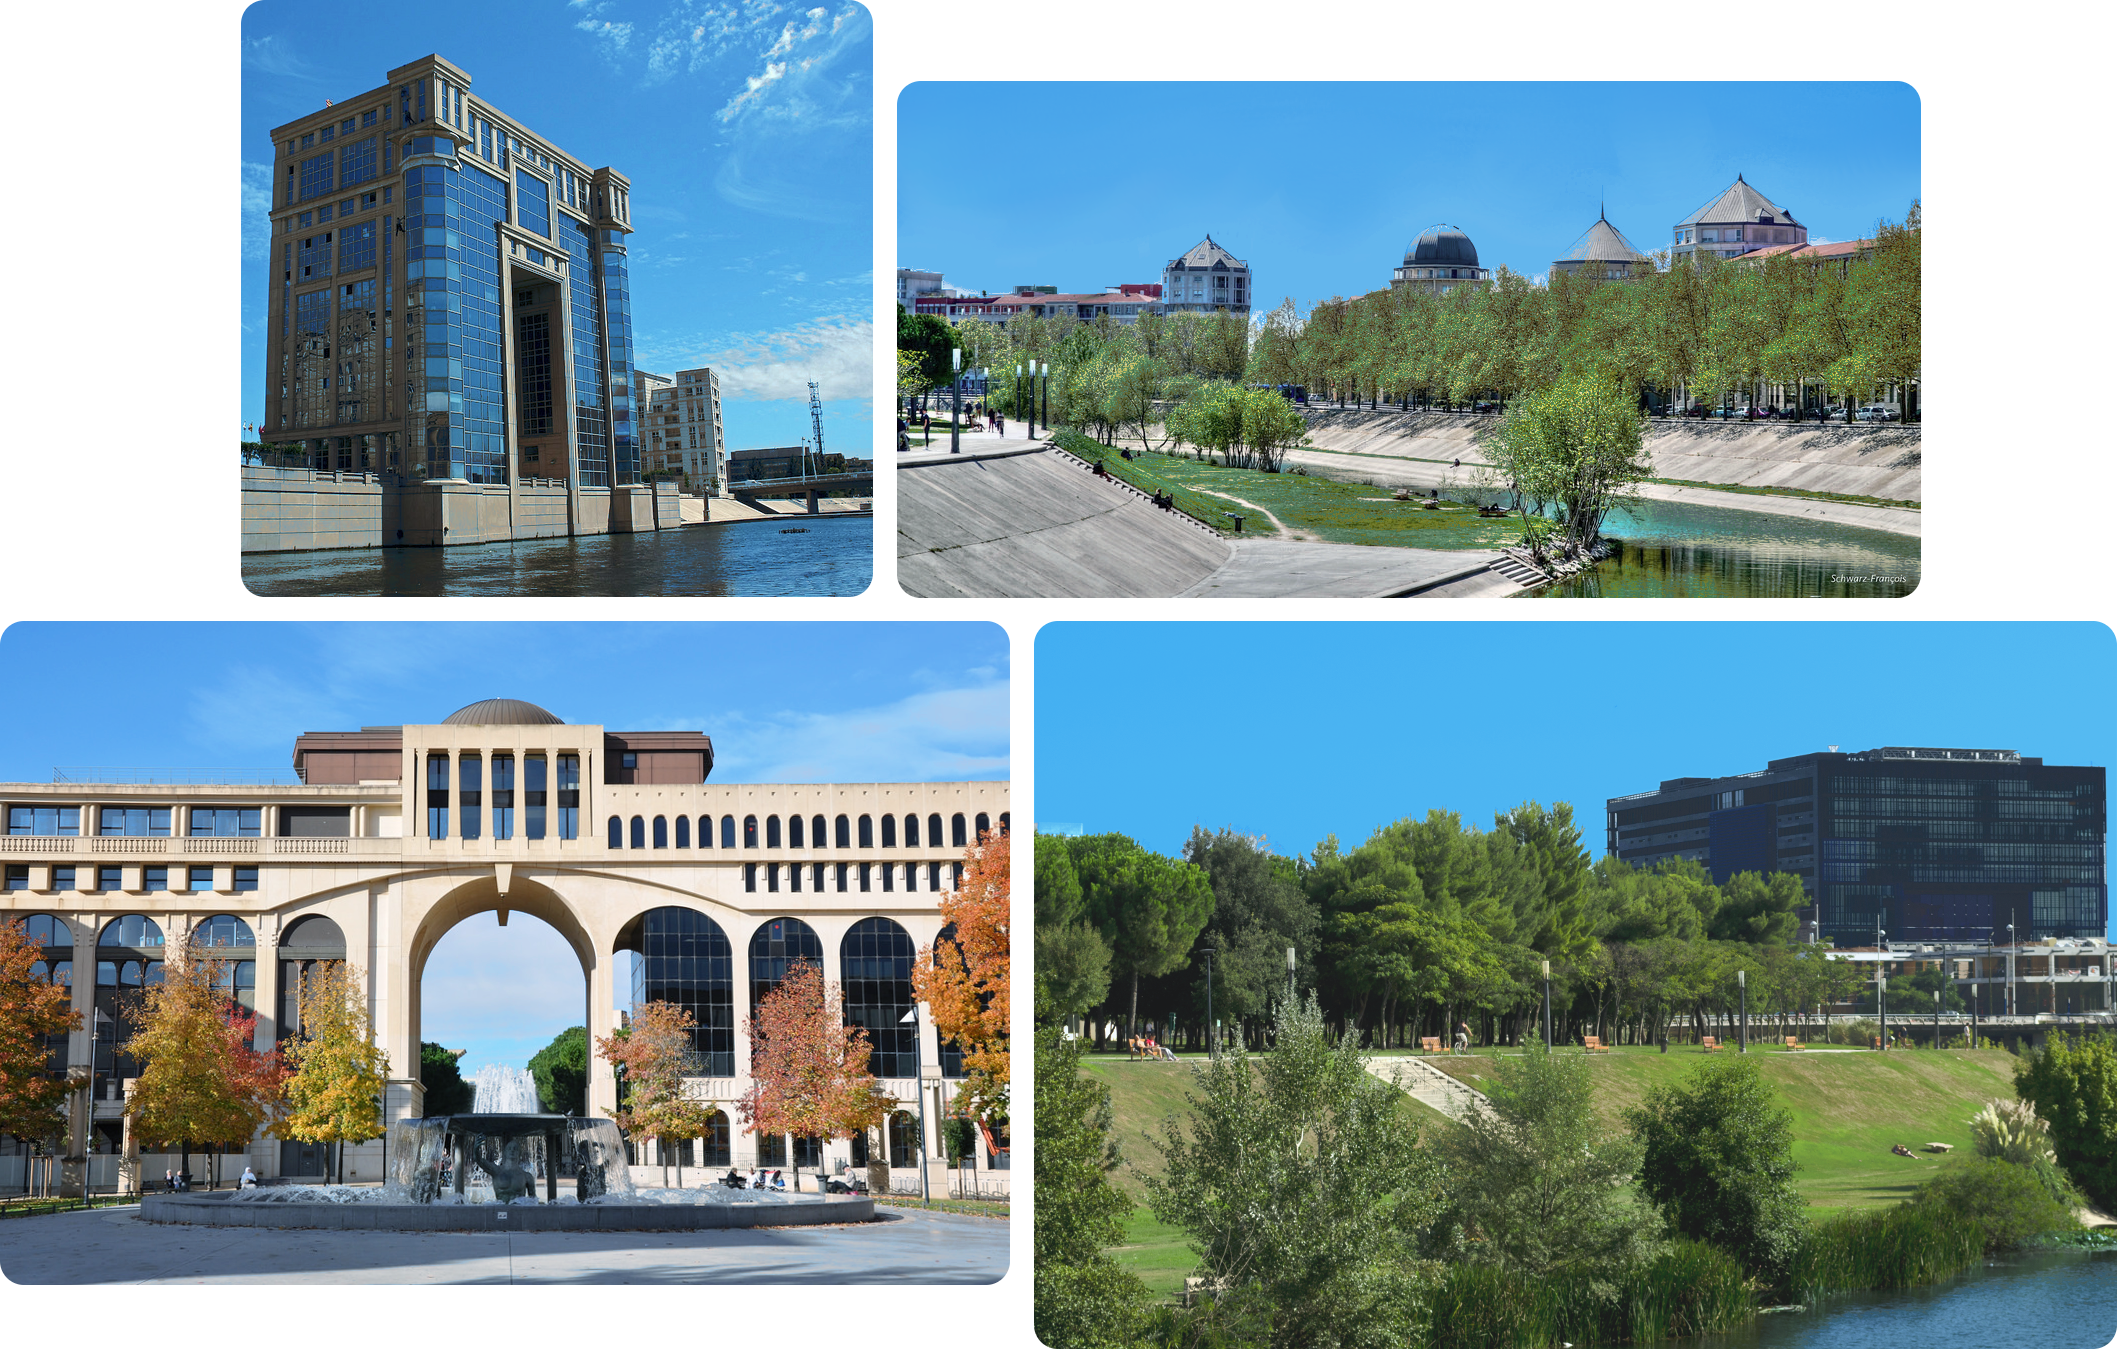 Agencement de plusieurs photos de Montpellier : l'hôtel des région (grand bâtiment greco-romain vitré), les bords du Lez (un fleuve passant dans Montpellier), un bâtiment d'Antigone (quartier au style greco-romain) et l'hôtel de ville vu depuis le Lez.